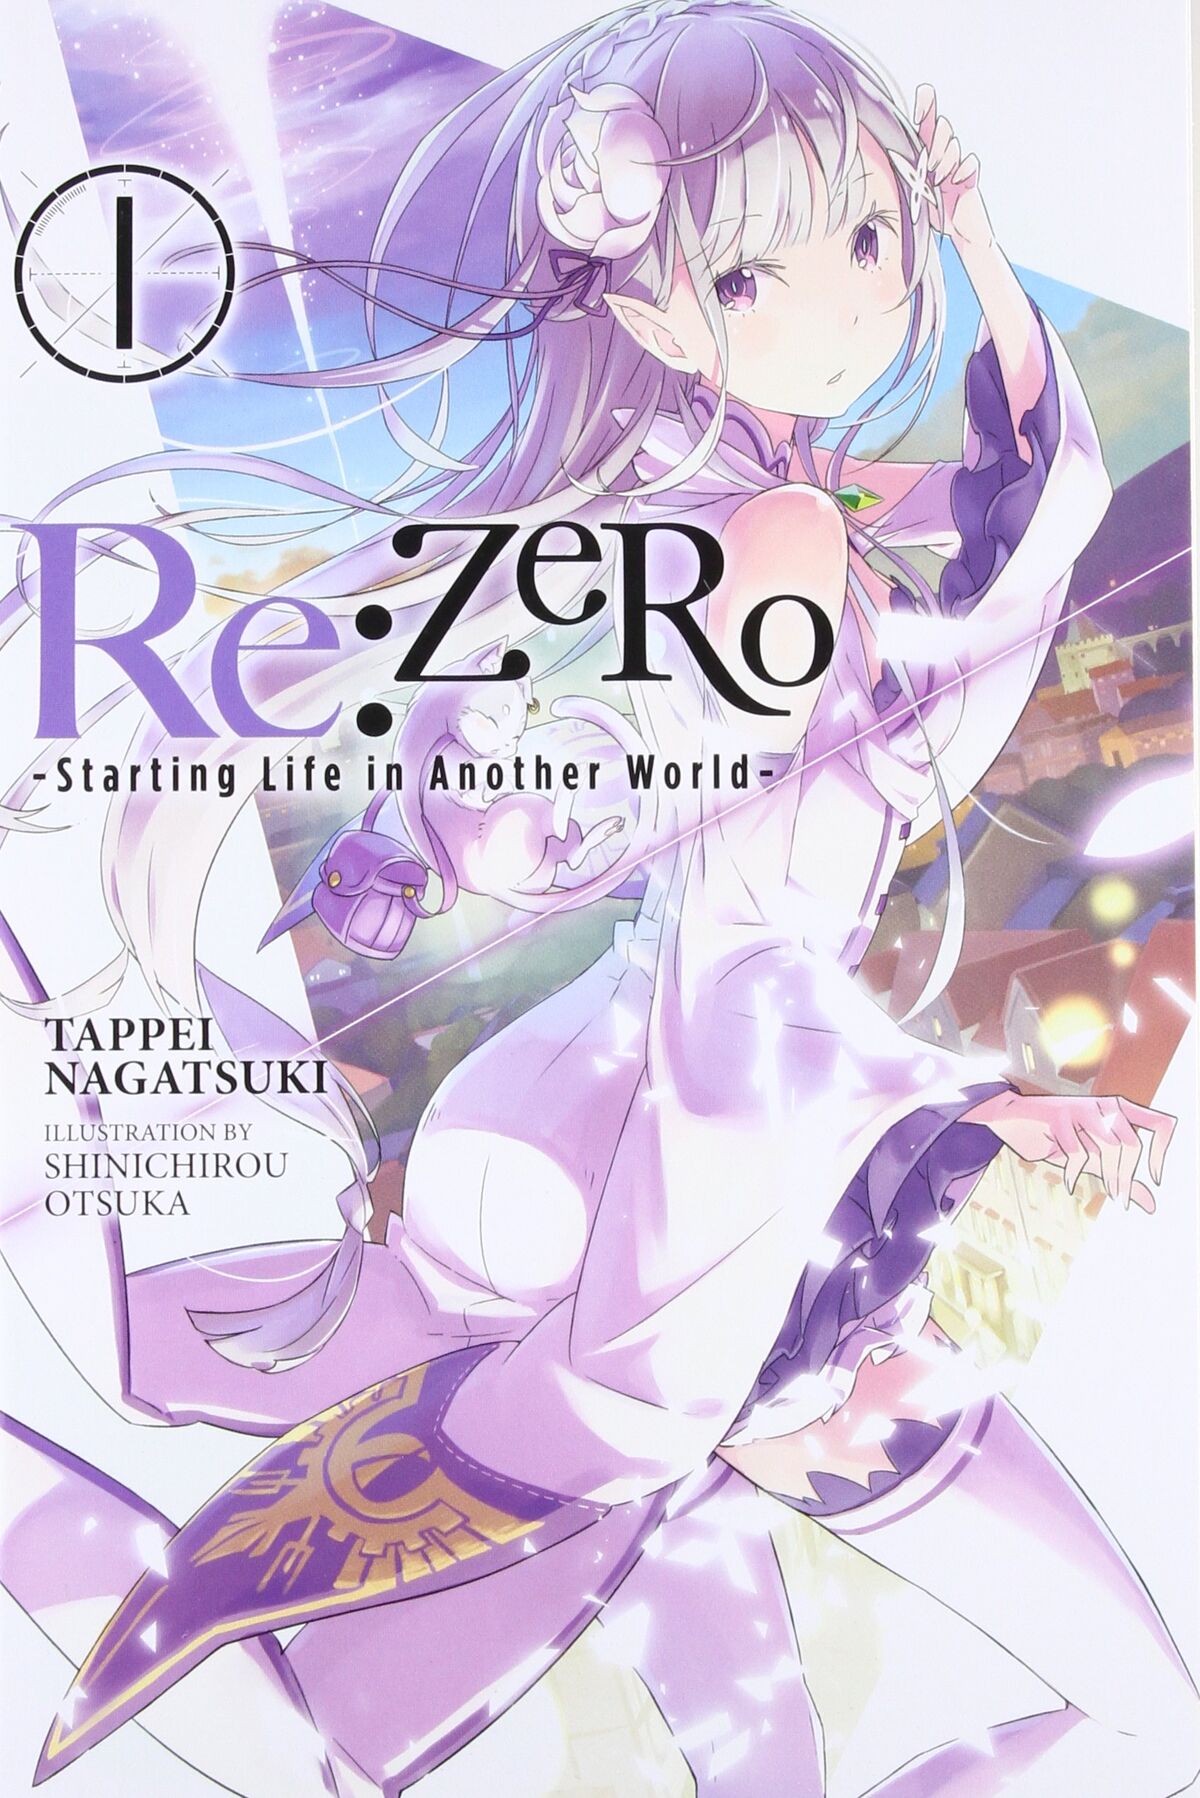 Zero Kara Hajimeru Mahou No SHO Vol.10 Light Novel Anime Japan